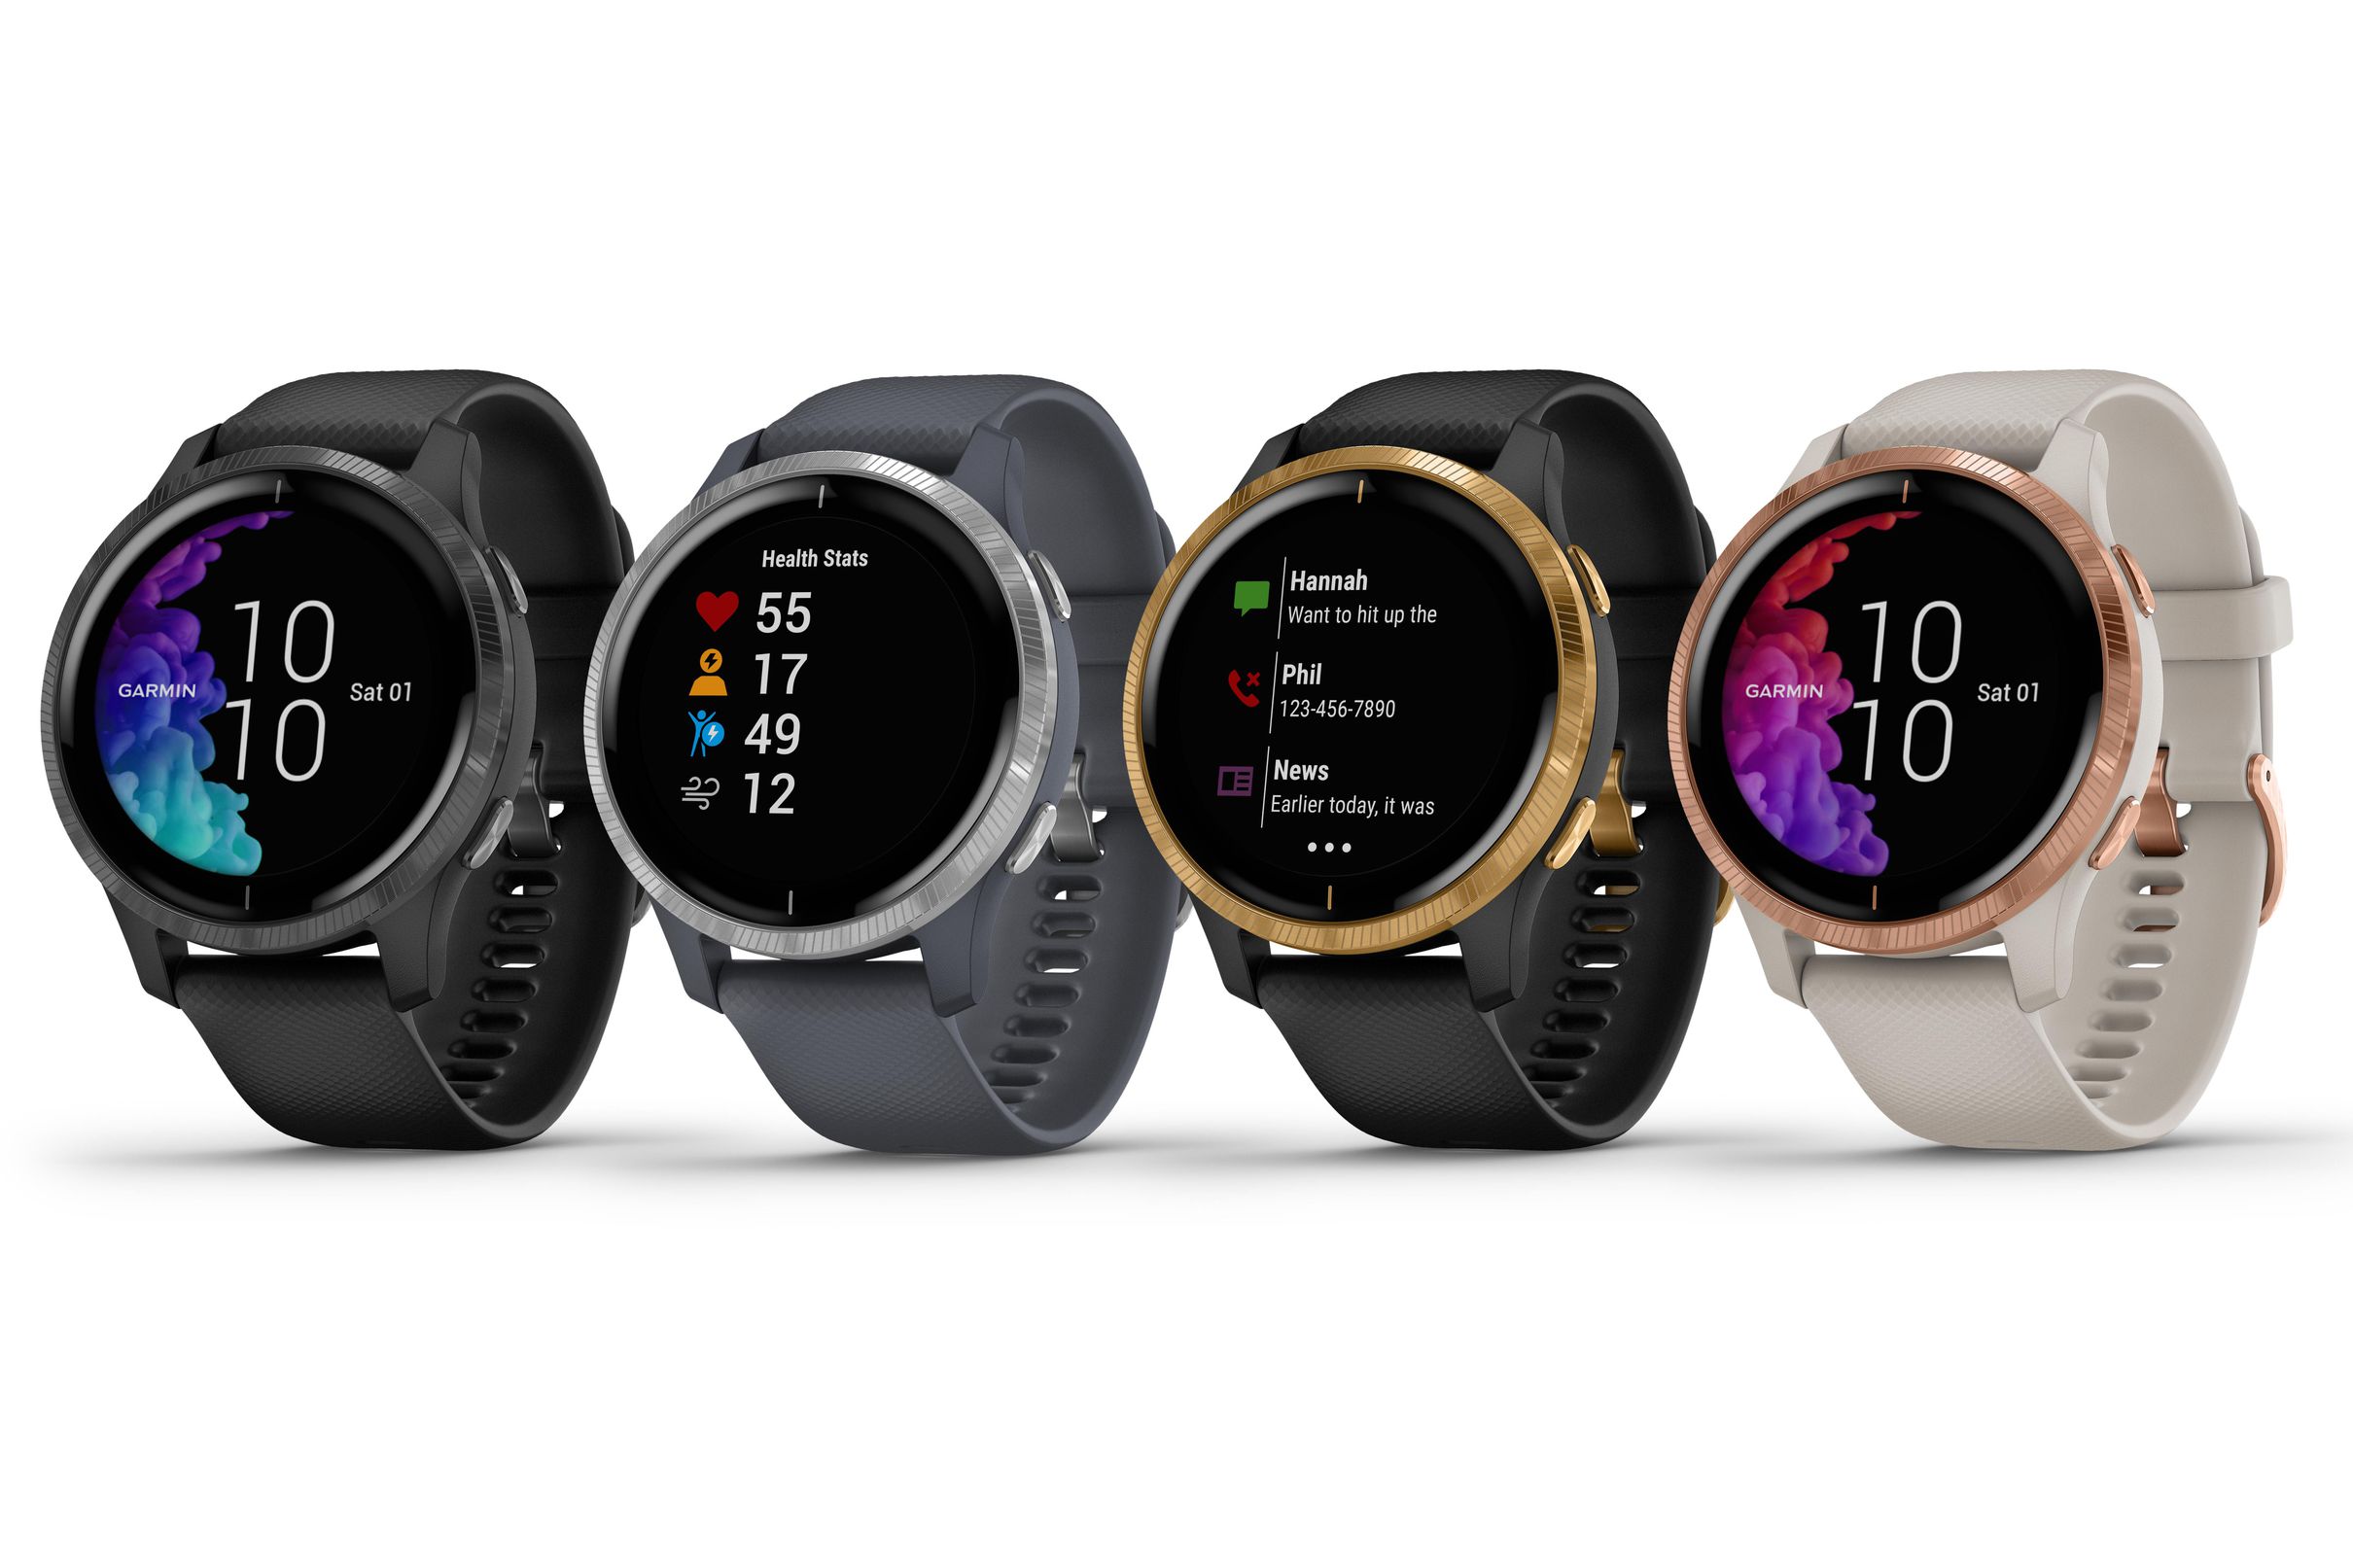 Garmin ra mắt smartwatch Venu mới với màn hình OLED với nhiều tính năng theo dõi sức khoẻ